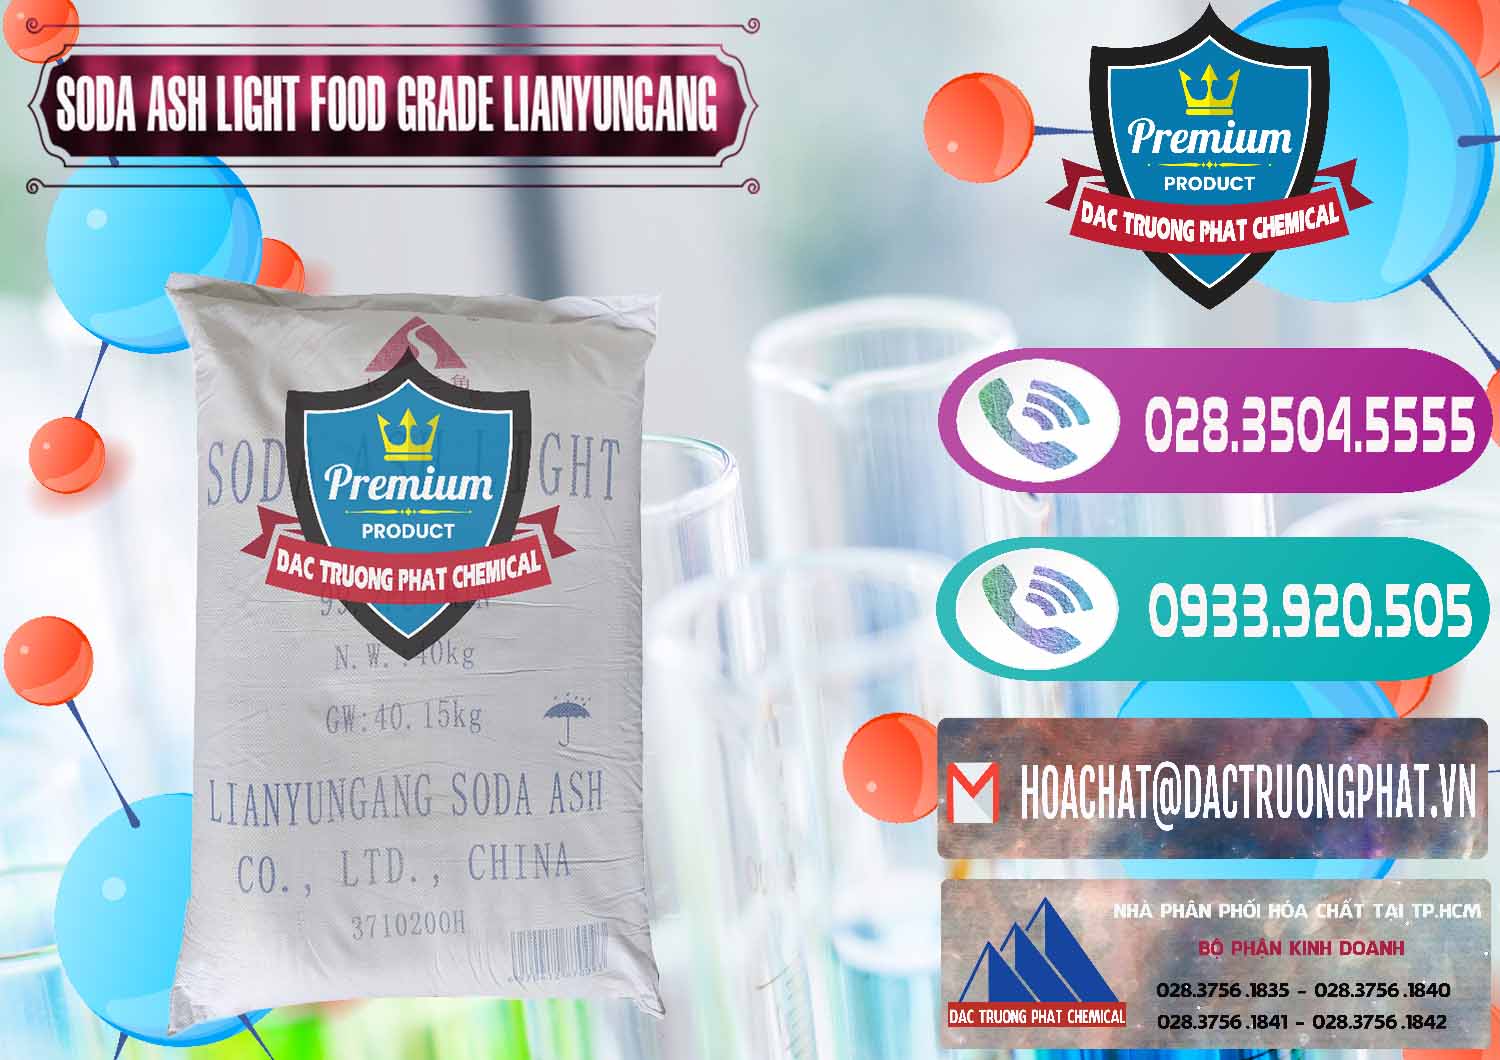 Nơi chuyên bán ( cung cấp ) Soda Ash Light - NA2CO3 Food Grade Lianyungang Trung Quốc - 0222 - Đơn vị chuyên bán & phân phối hóa chất tại TP.HCM - hoachatxulynuoc.com